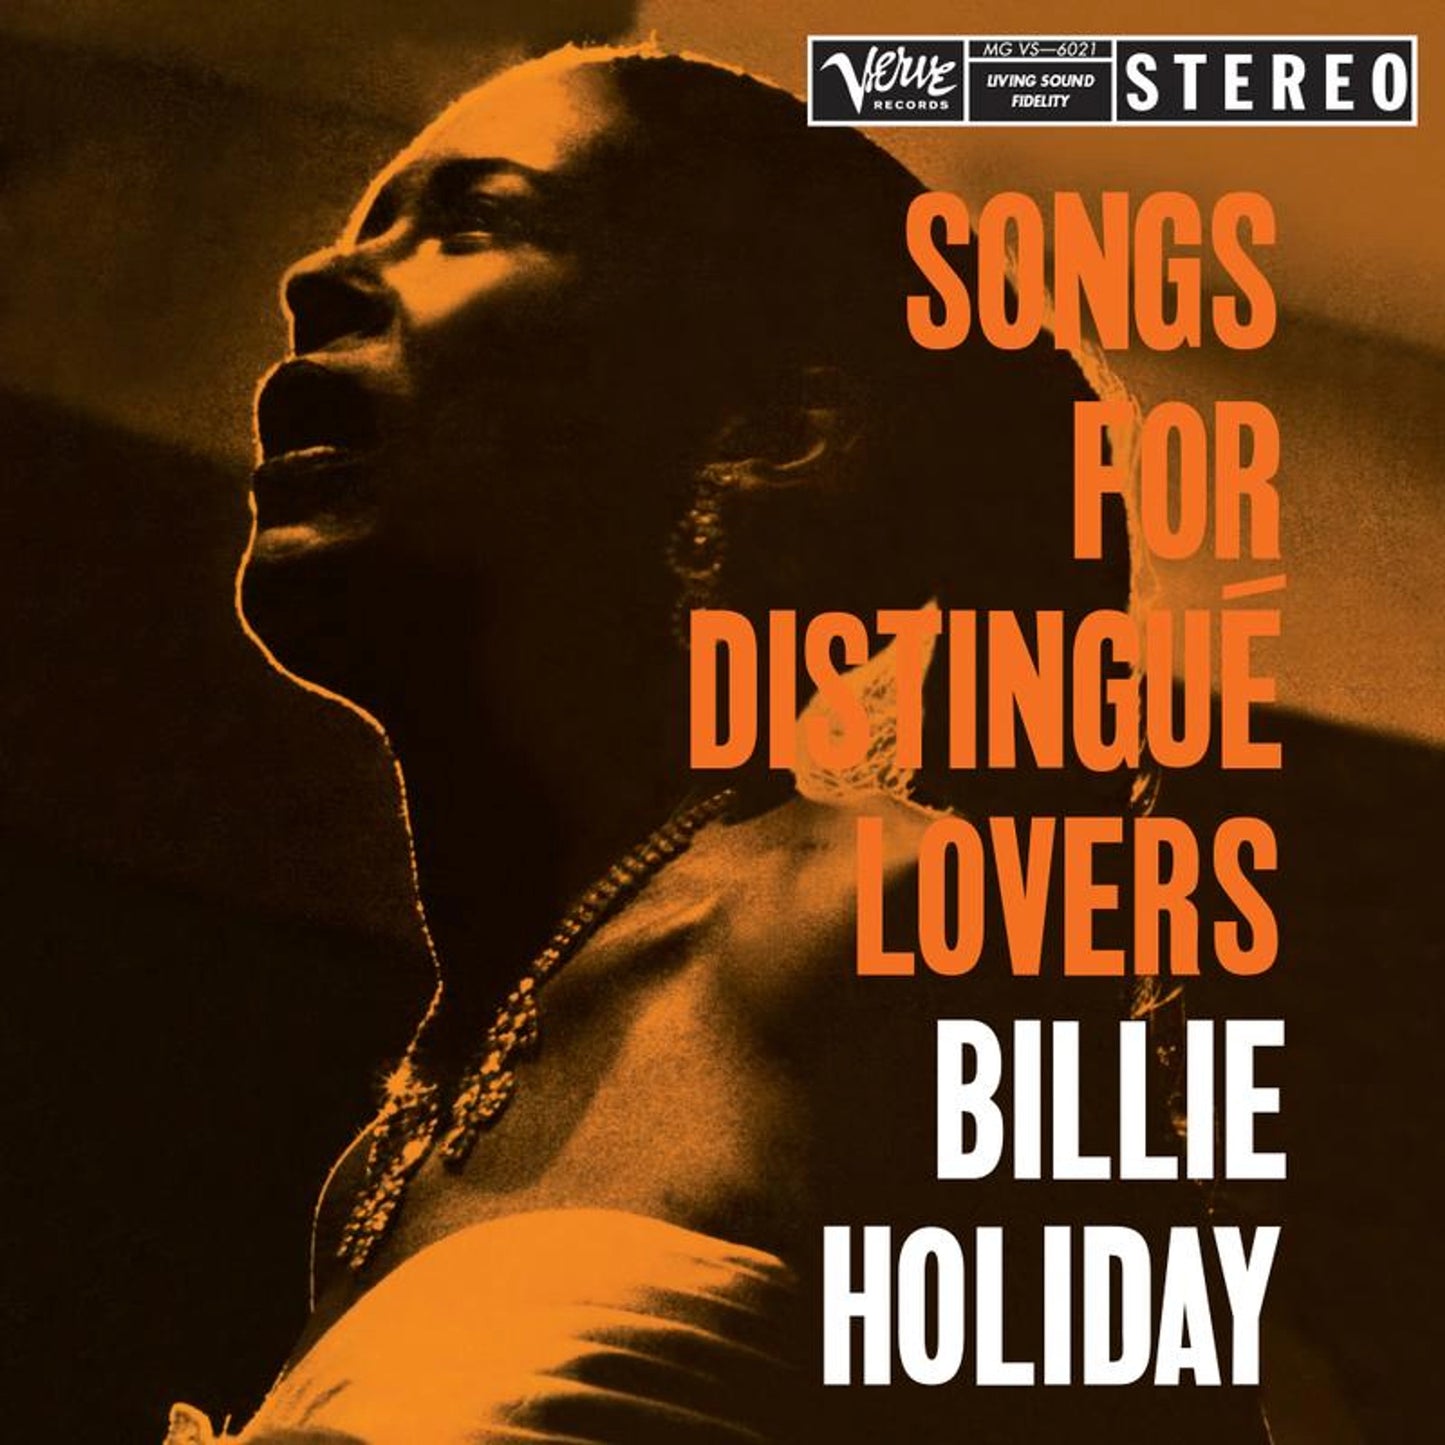 Billie Holiday - Canciones para amantes distinguidos - Verve Series LP